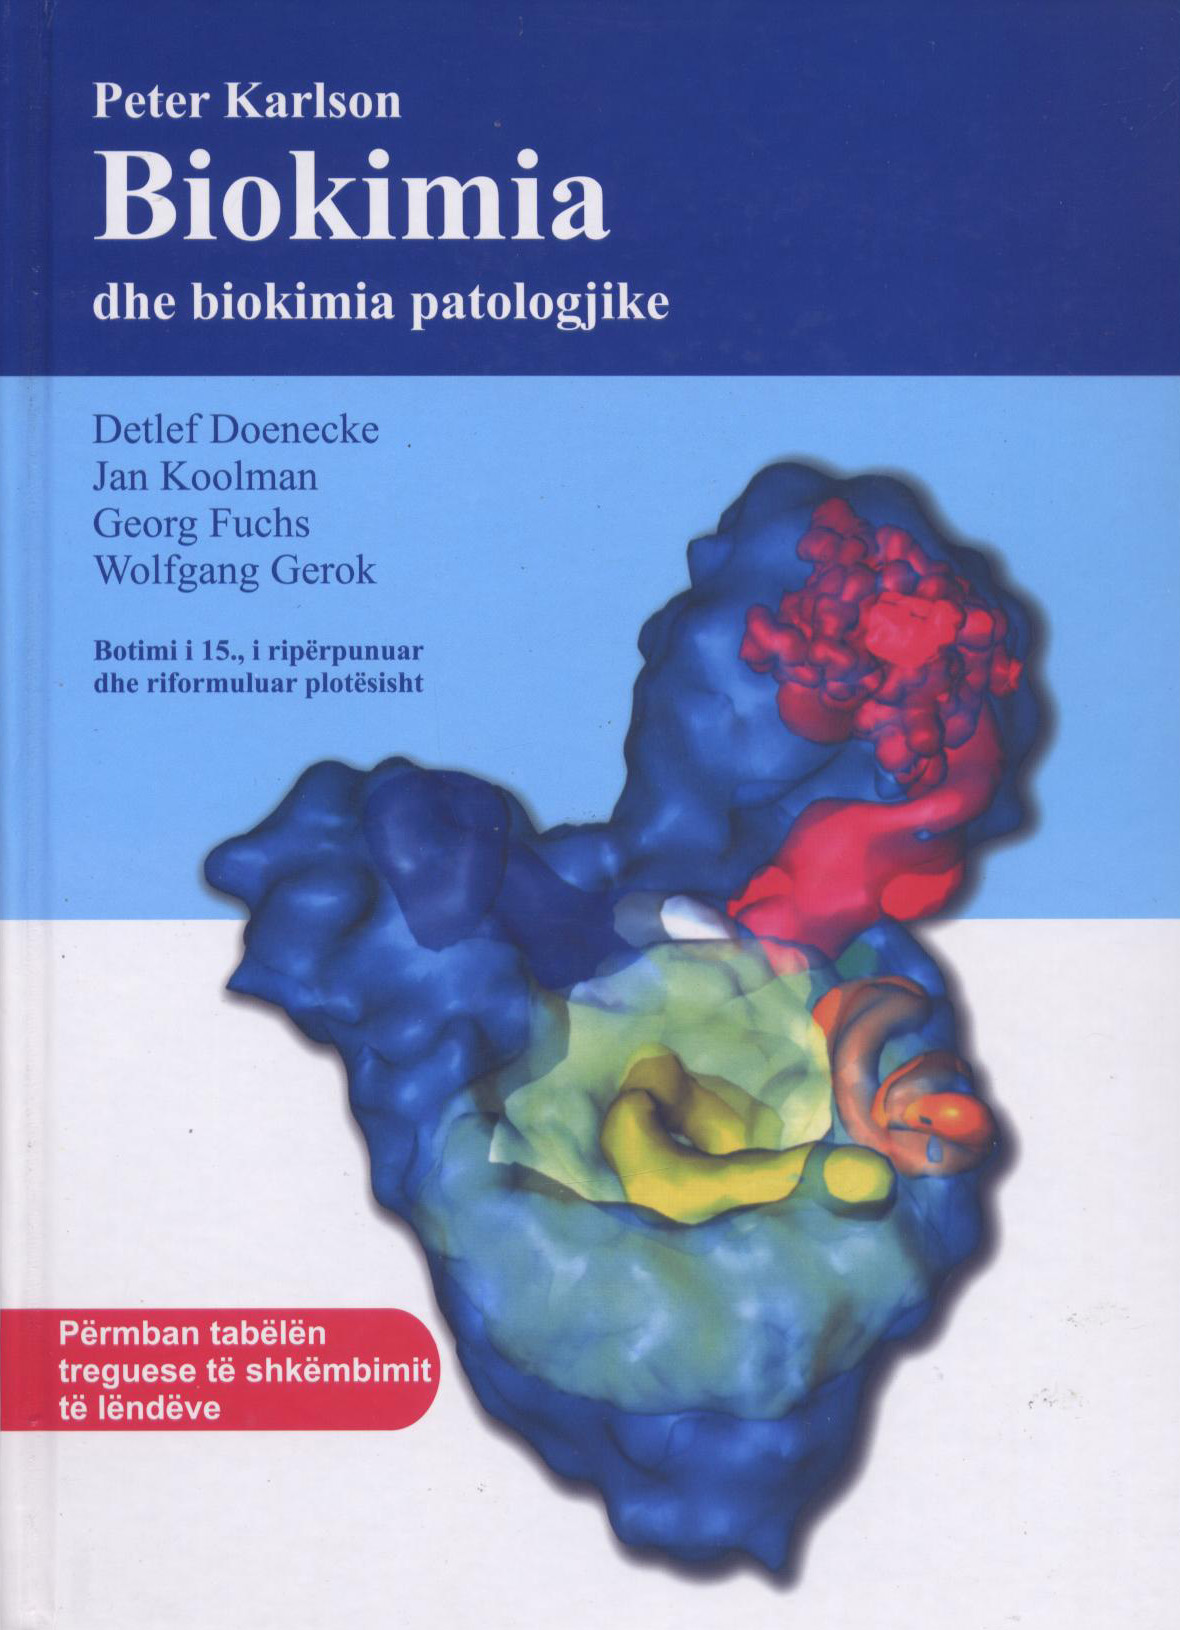 Peter Karlson - Biokimia dhe biokimia patologjike (botimi i 15)